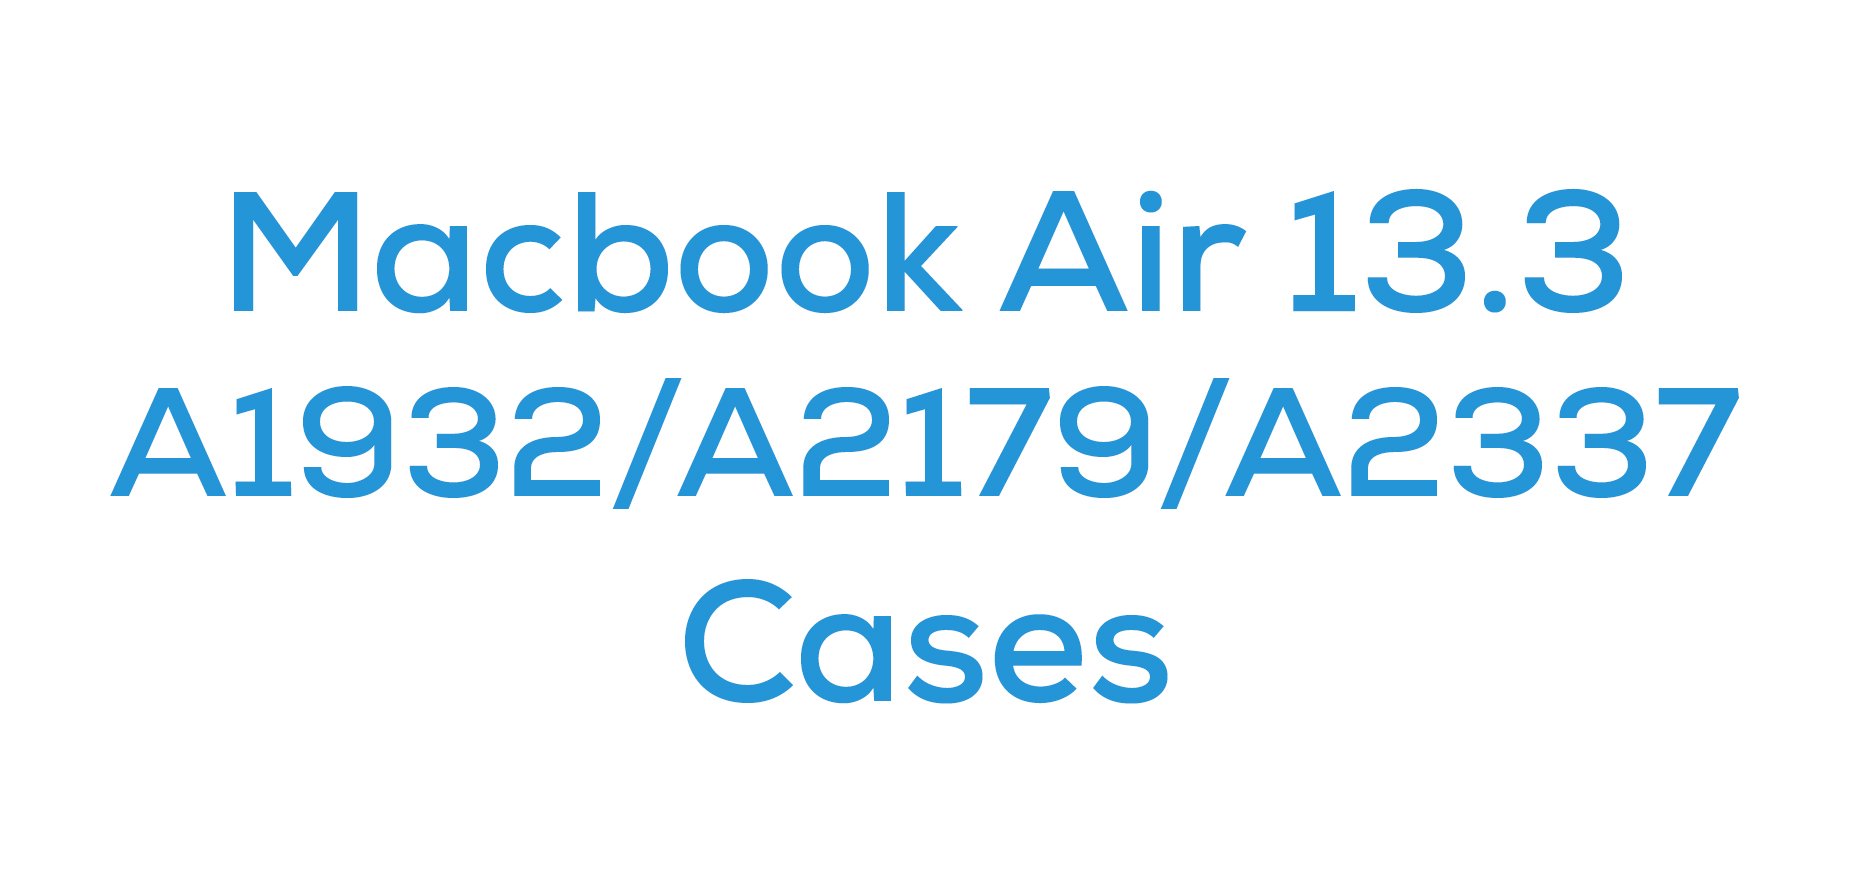 Macbook Air 13.3 (A1932/A2179/A2337)